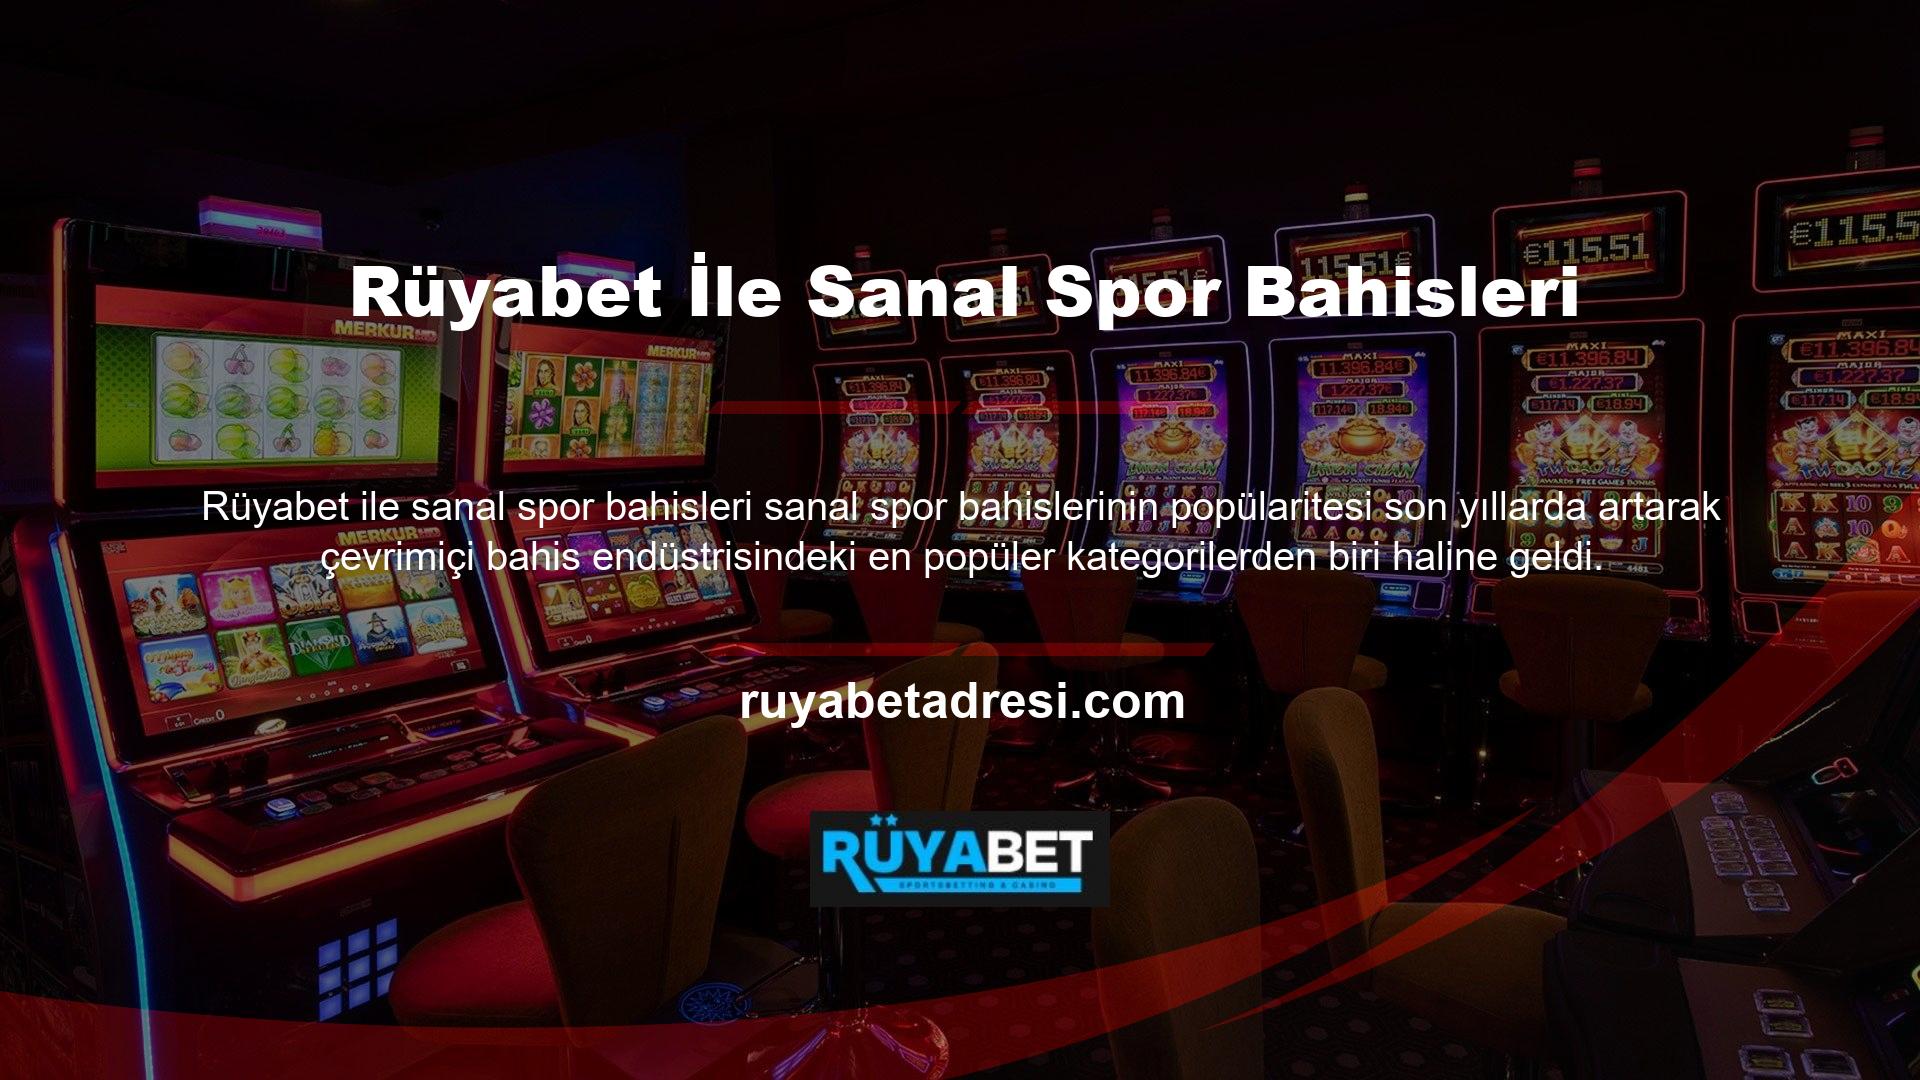 Rüyabet web sitesinde sanal spor bahisleri şu anda Türkiye'deki en iyi hizmettir